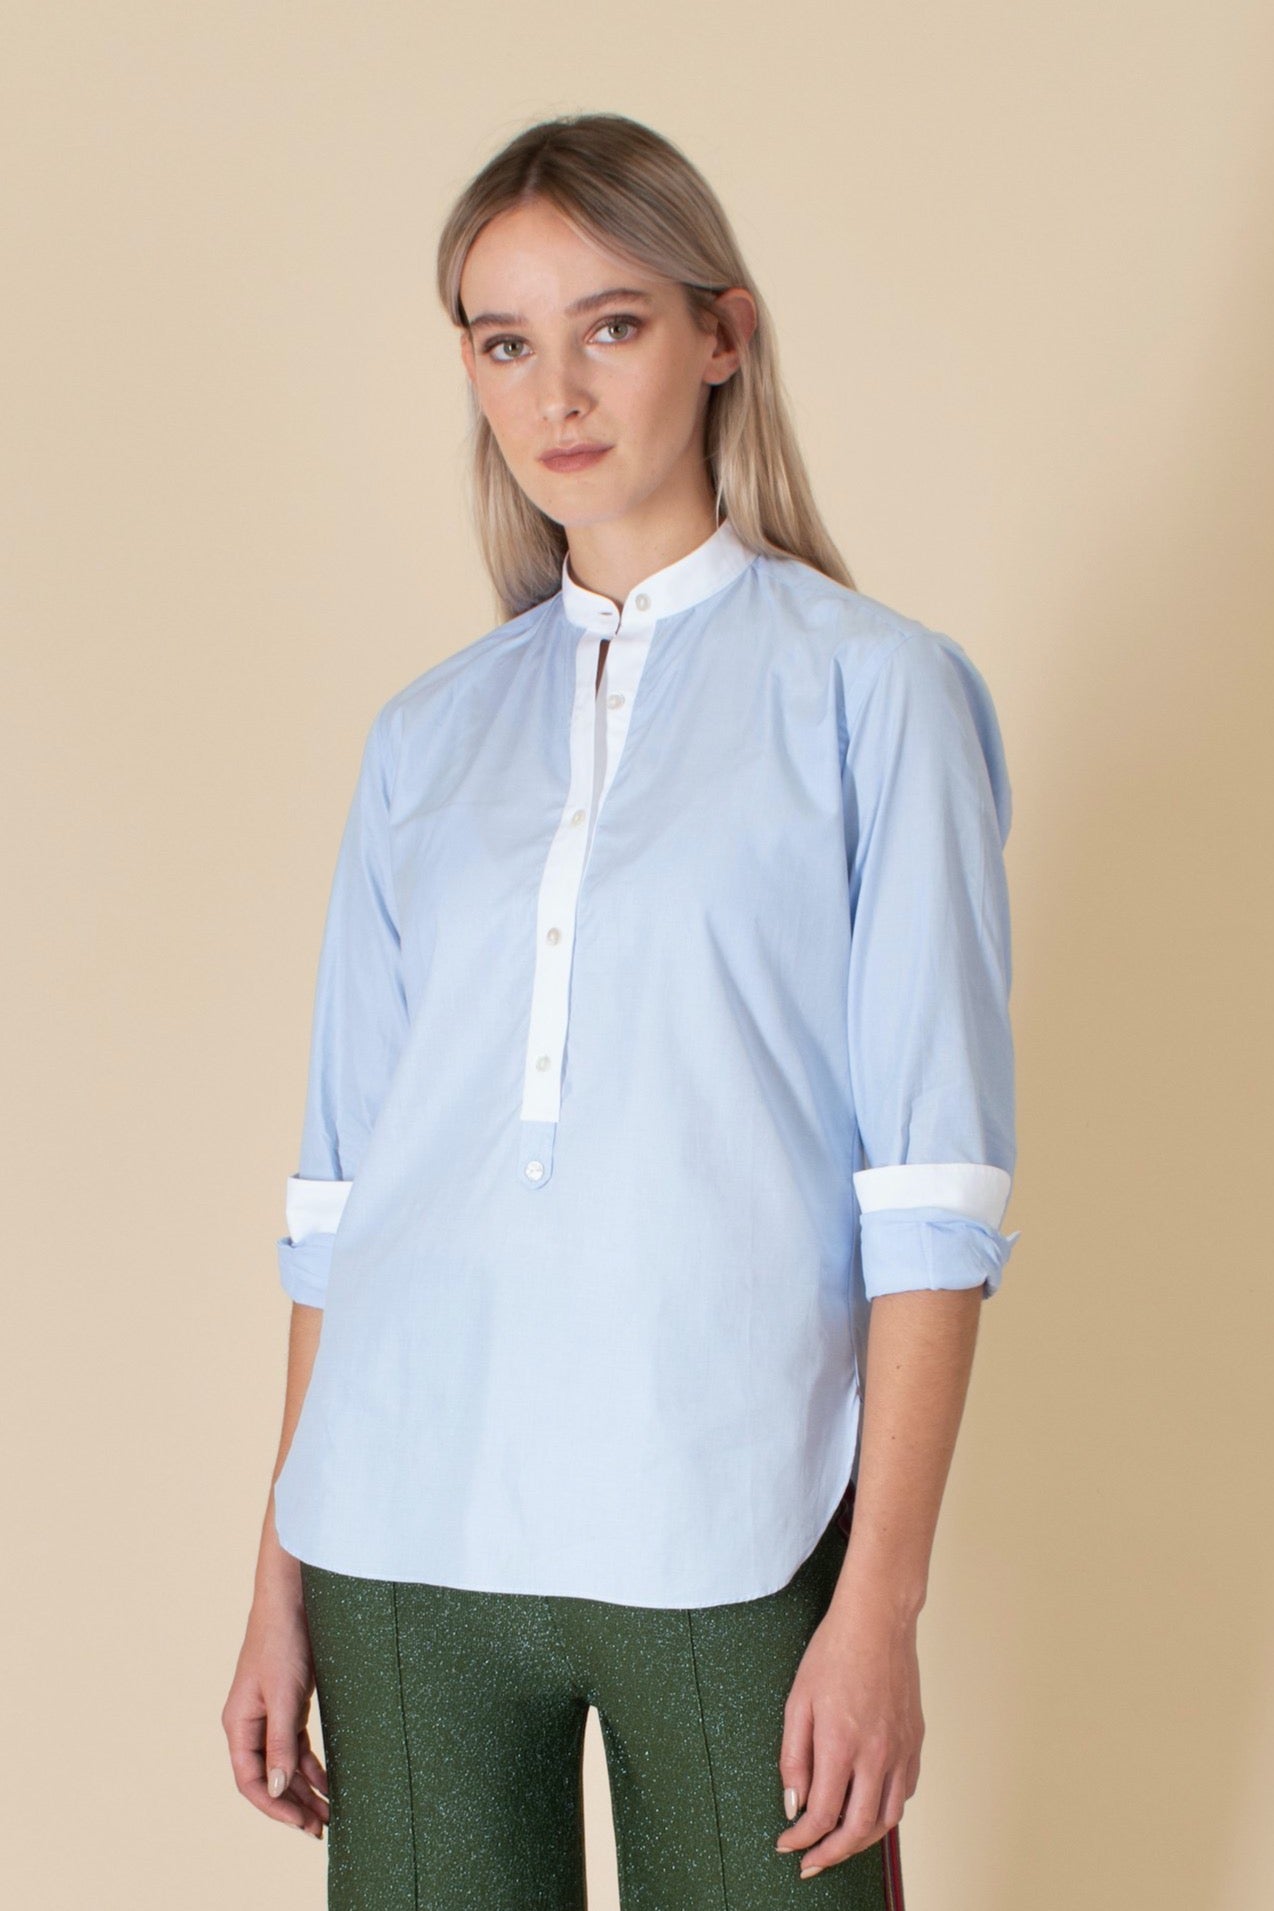 Matilde Blue Shirt With White Trim